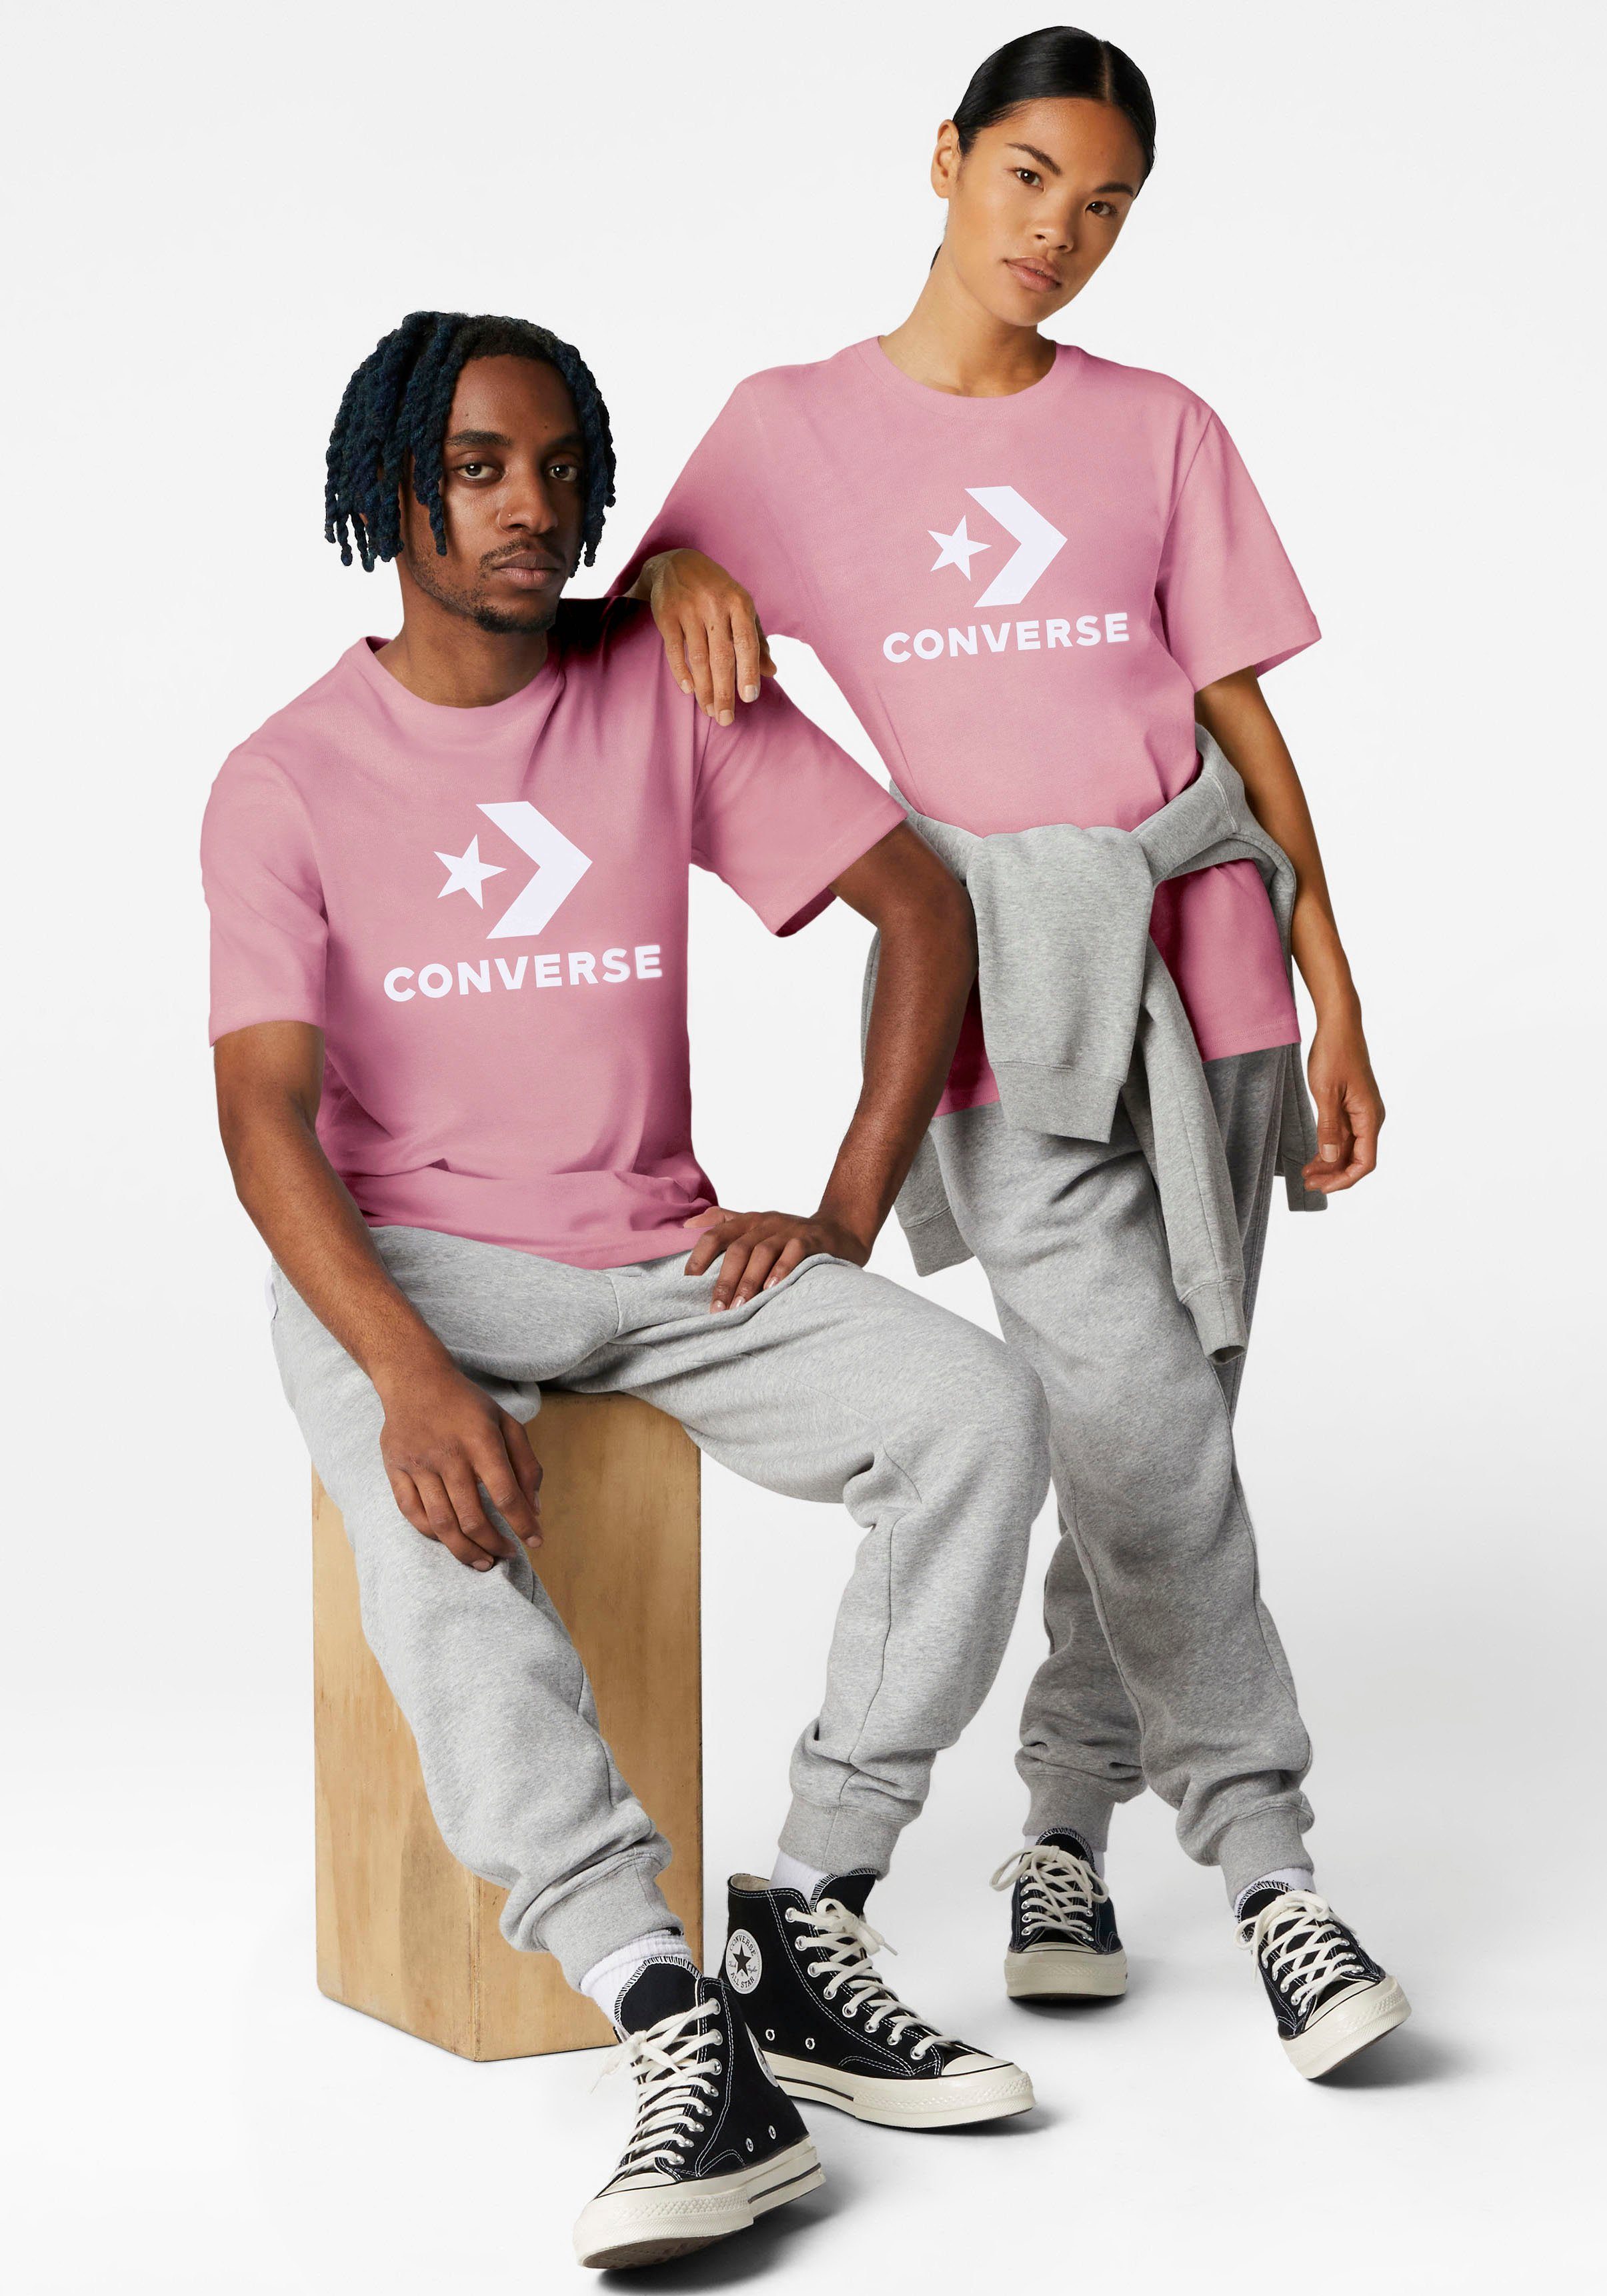 Converse T-Shirt UNISEX LOGO CHEVRON T-SHIRT dunkelrosa STAR